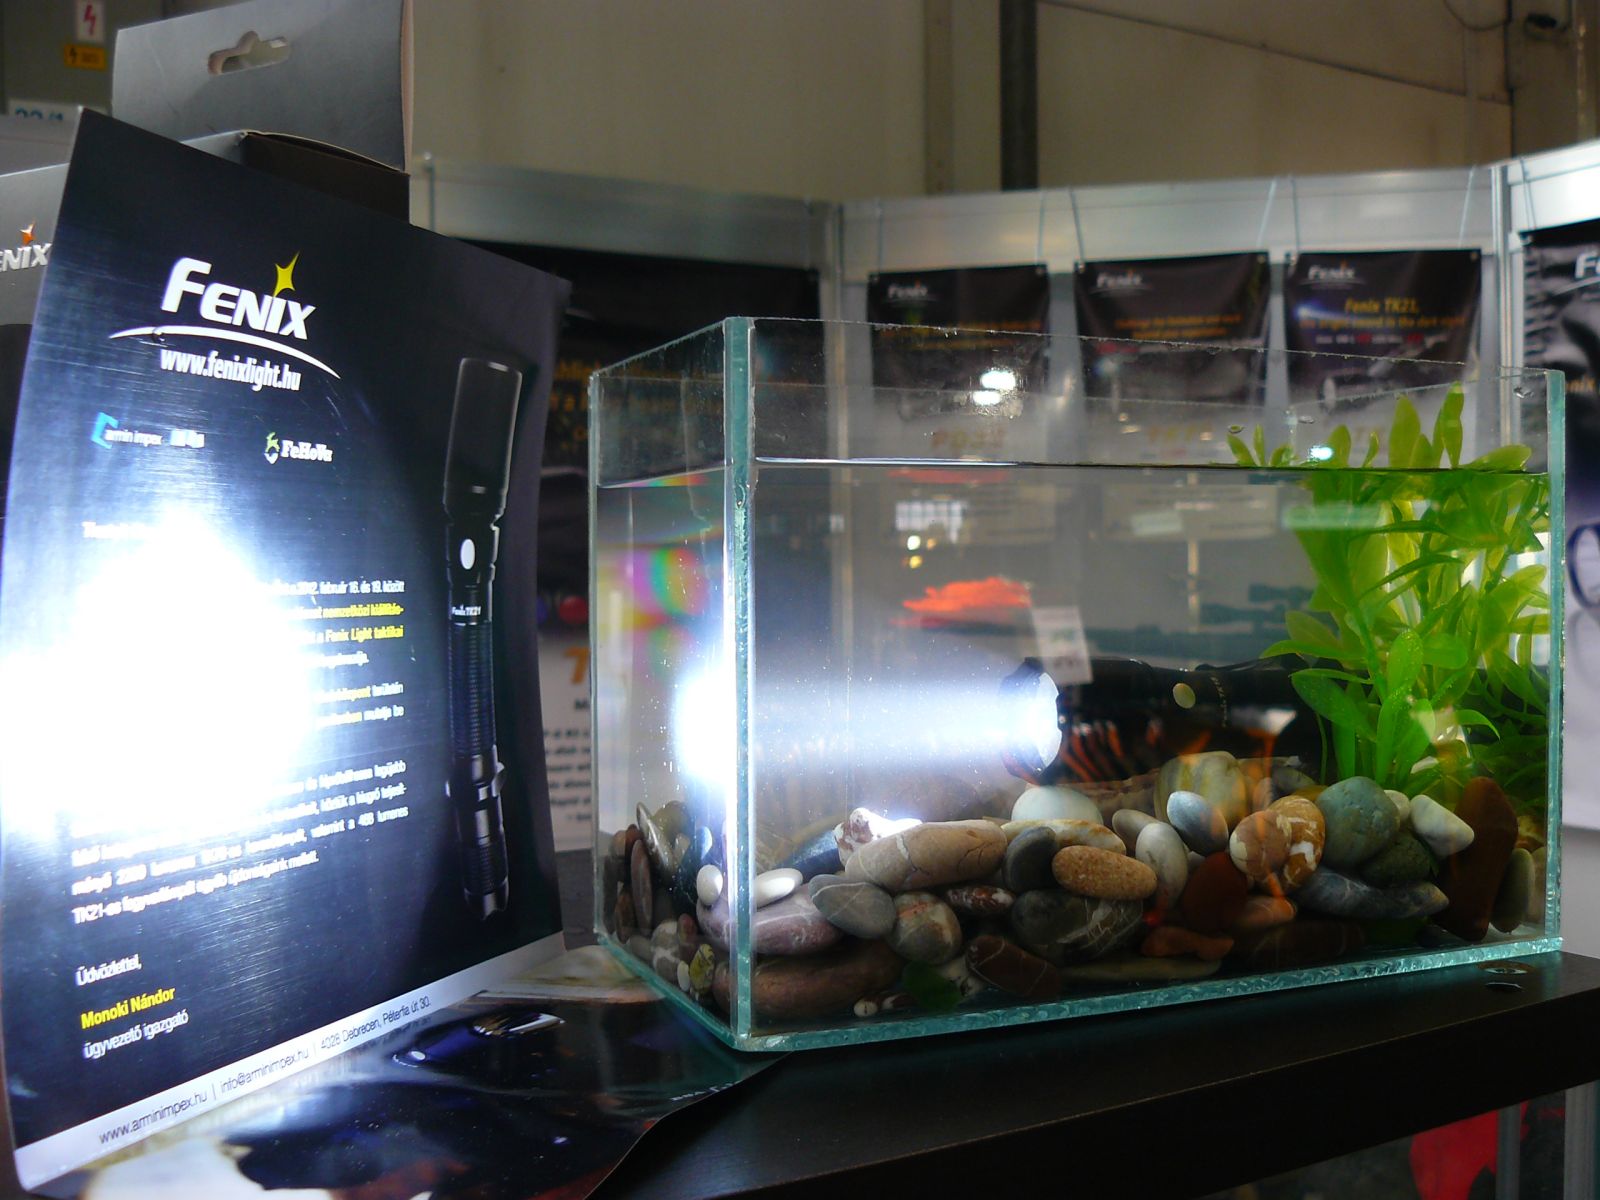 Fenix elemlámpák a FeHoVa kiállításon 2012